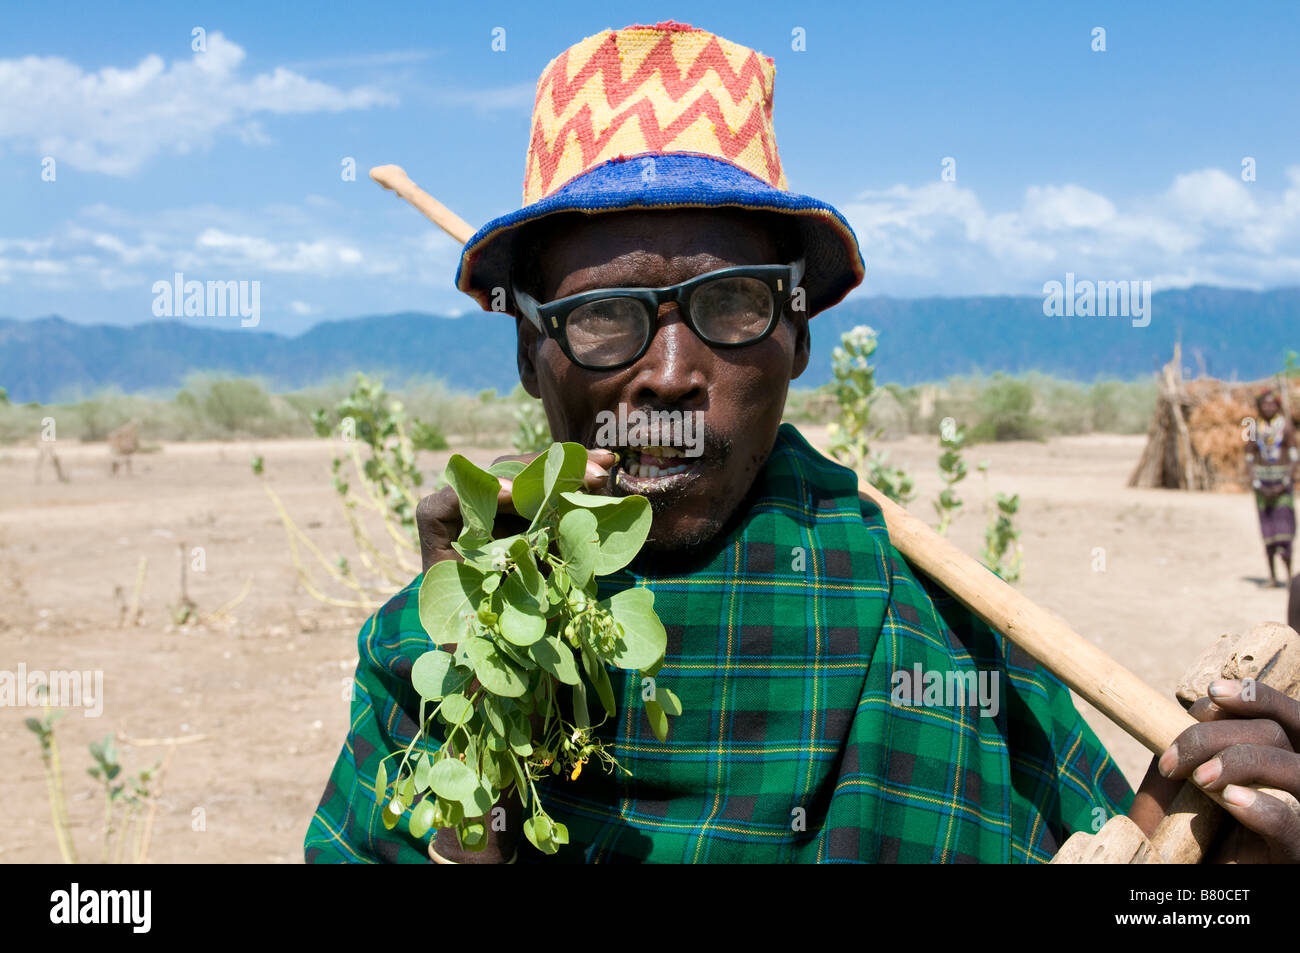 man-chewing-khat-arbore-omovalley-ethiopia-africa-B80CET.jpg